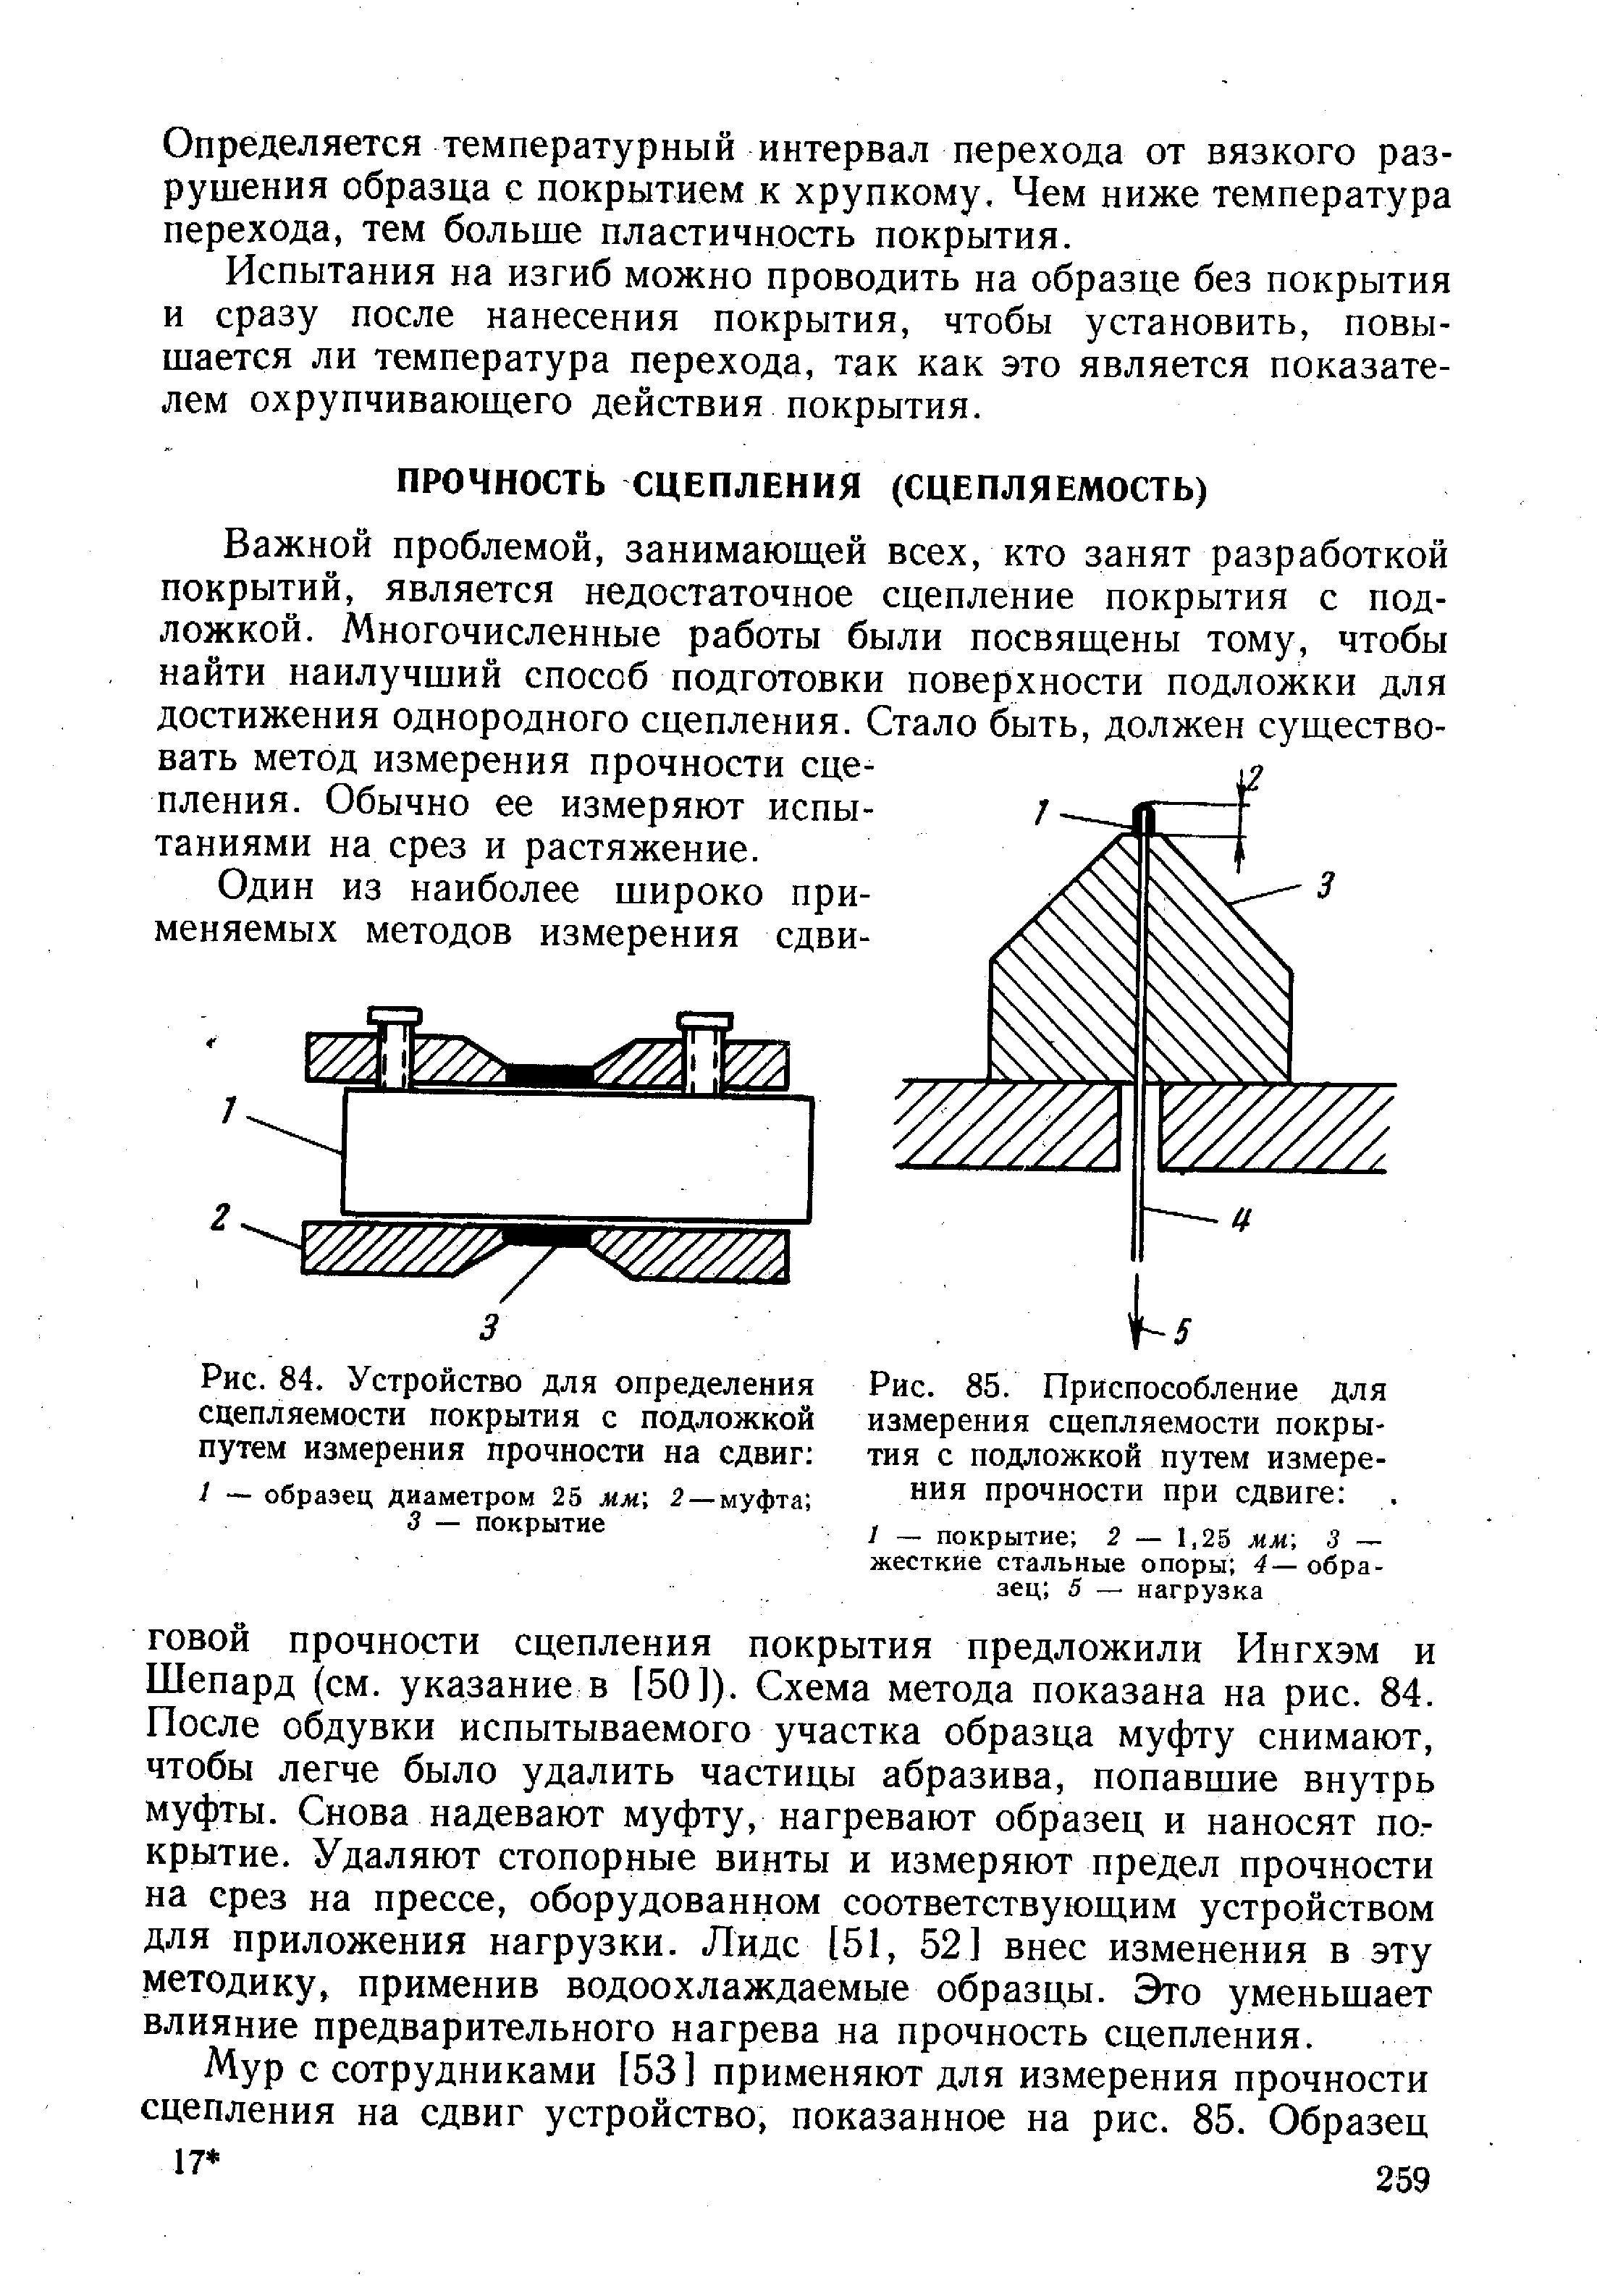 Рис. 84. Устройство для определения сцепляемости покрытия с подложкой путем измерения прочности на сдвиг 
